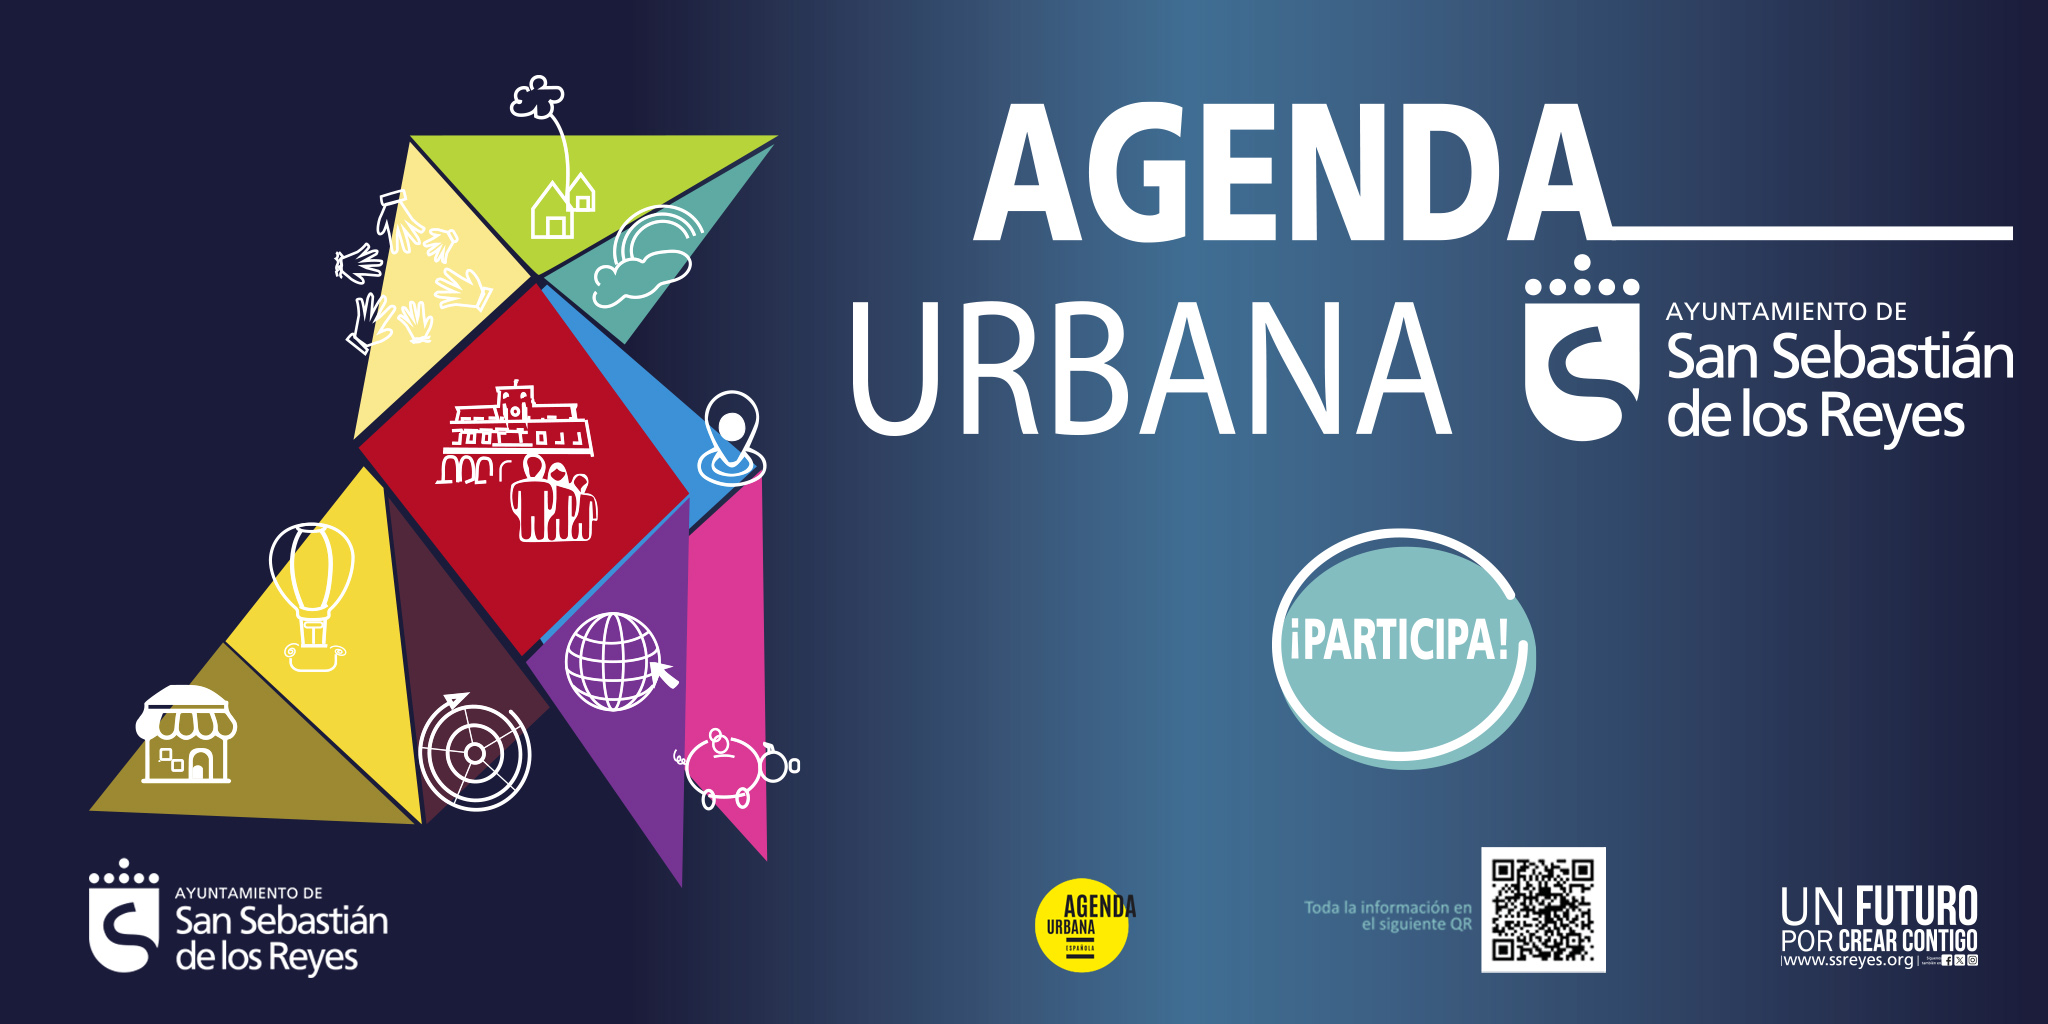 El Ayuntamiento va a poner en marcha un Plan de Acción basado en la Agenda Urbana Española, que sentará las bases de su modelo de ciudad a medio y largo plazo. Se trata de un proceso participativo, impulsado por el equipo de Gobierno, en el que están invitados a aportar sus ideas todos los vecinos.